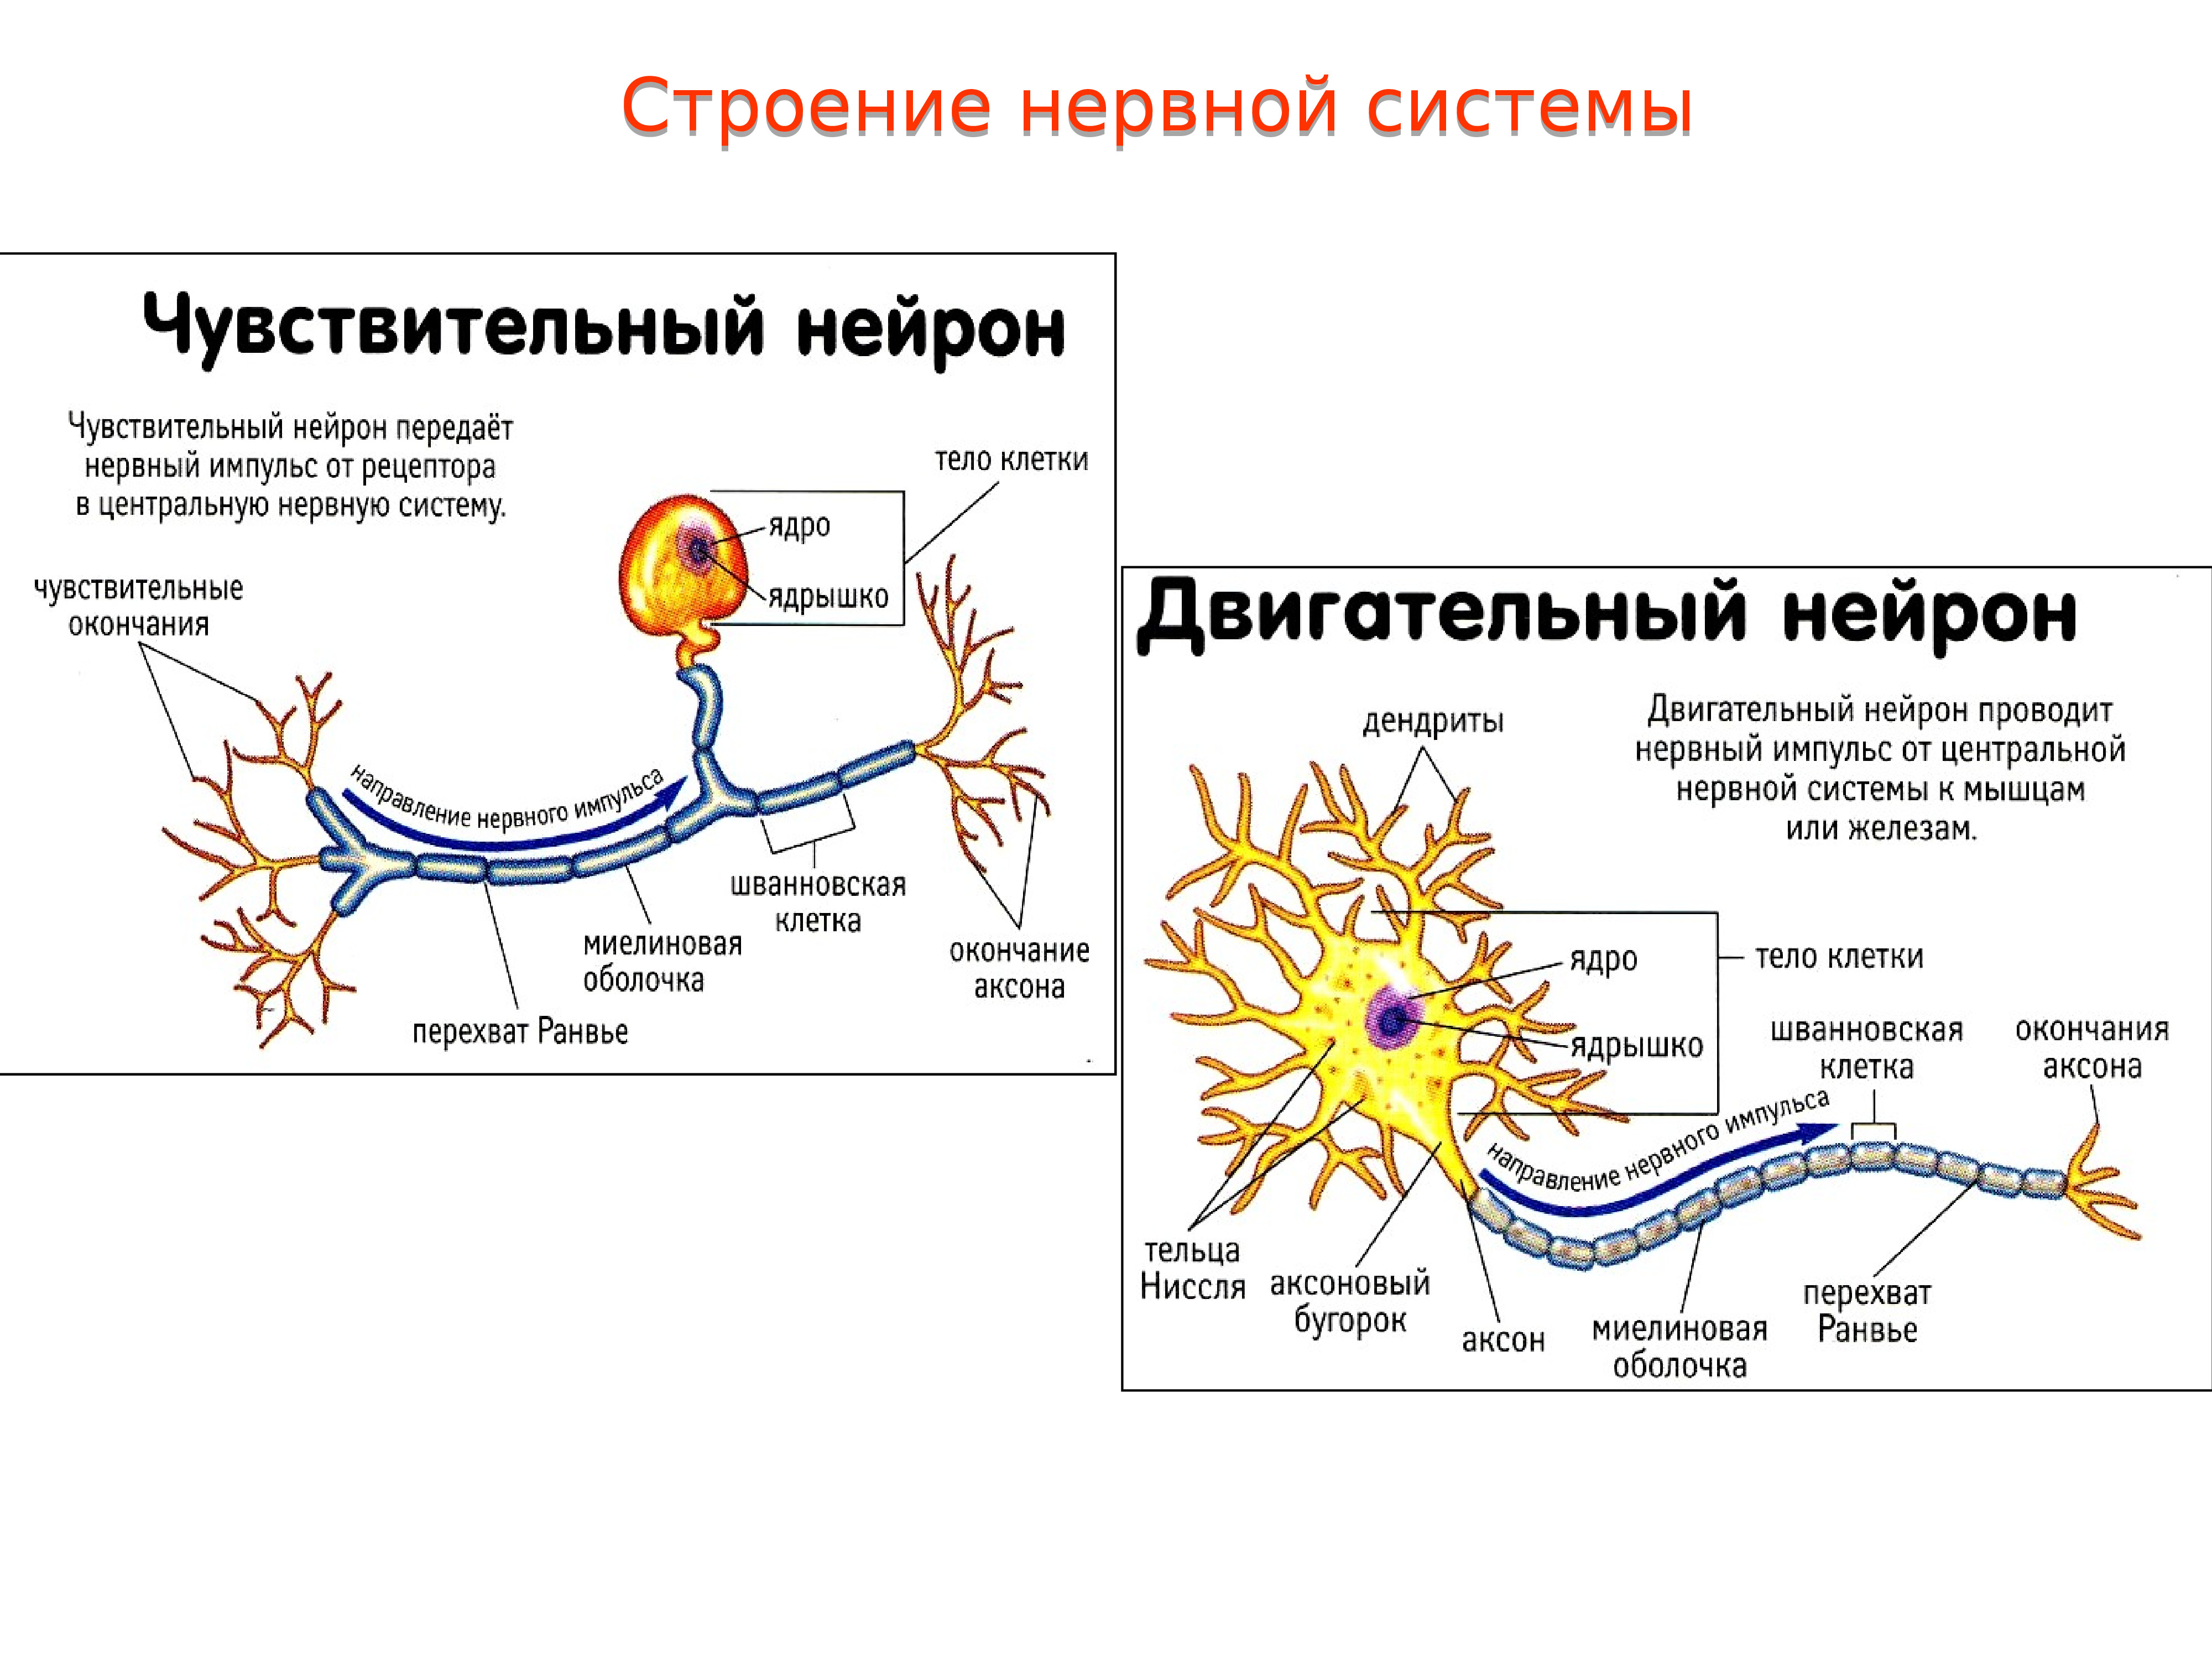 Ткань передающая импульс. Строение нервного импульса. Строение нейрона анатомия ЦНС. Схема нервной системы нейронов. Схема нейрона ЦНС.